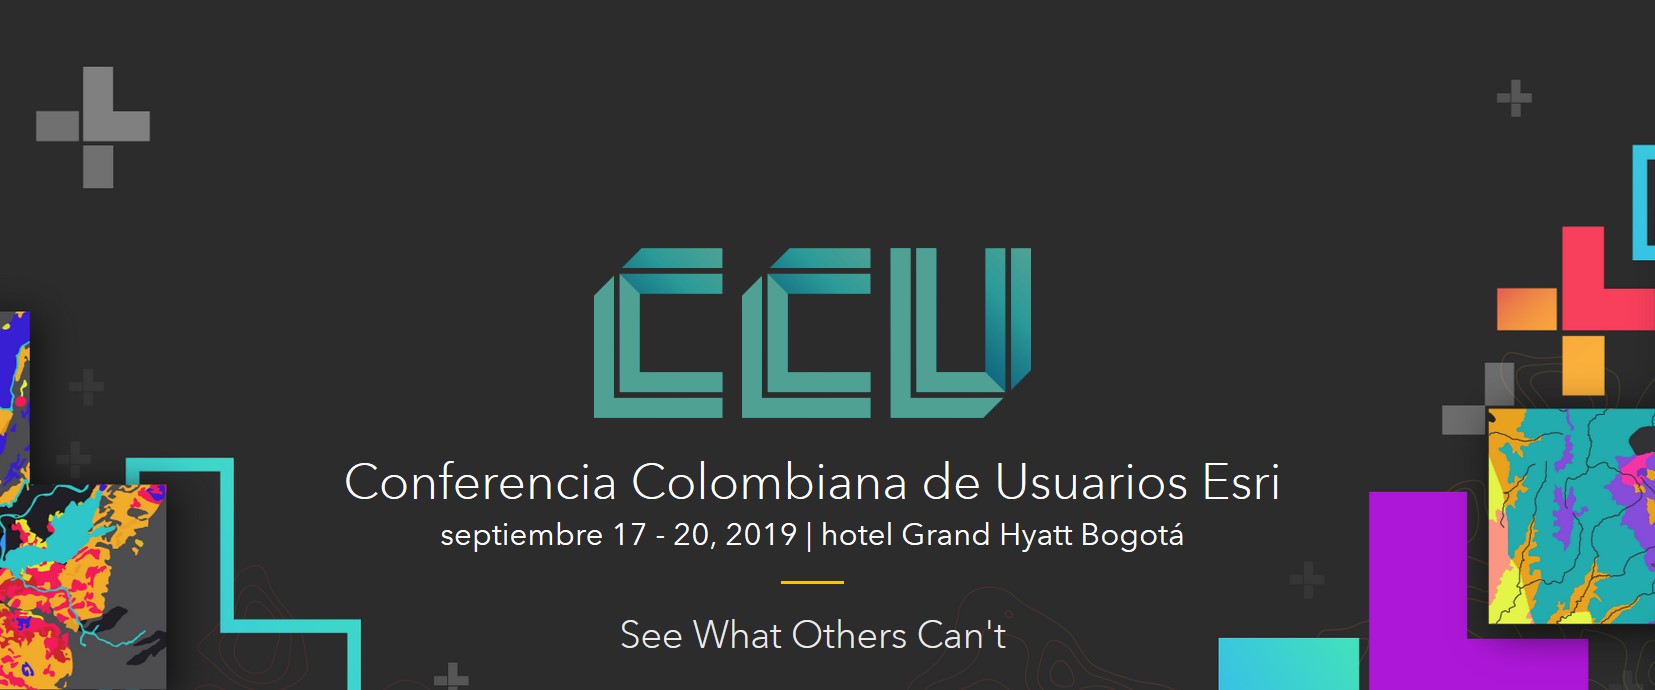 Conferencia Colombiana de Usuarios Esri (CCU) 2019